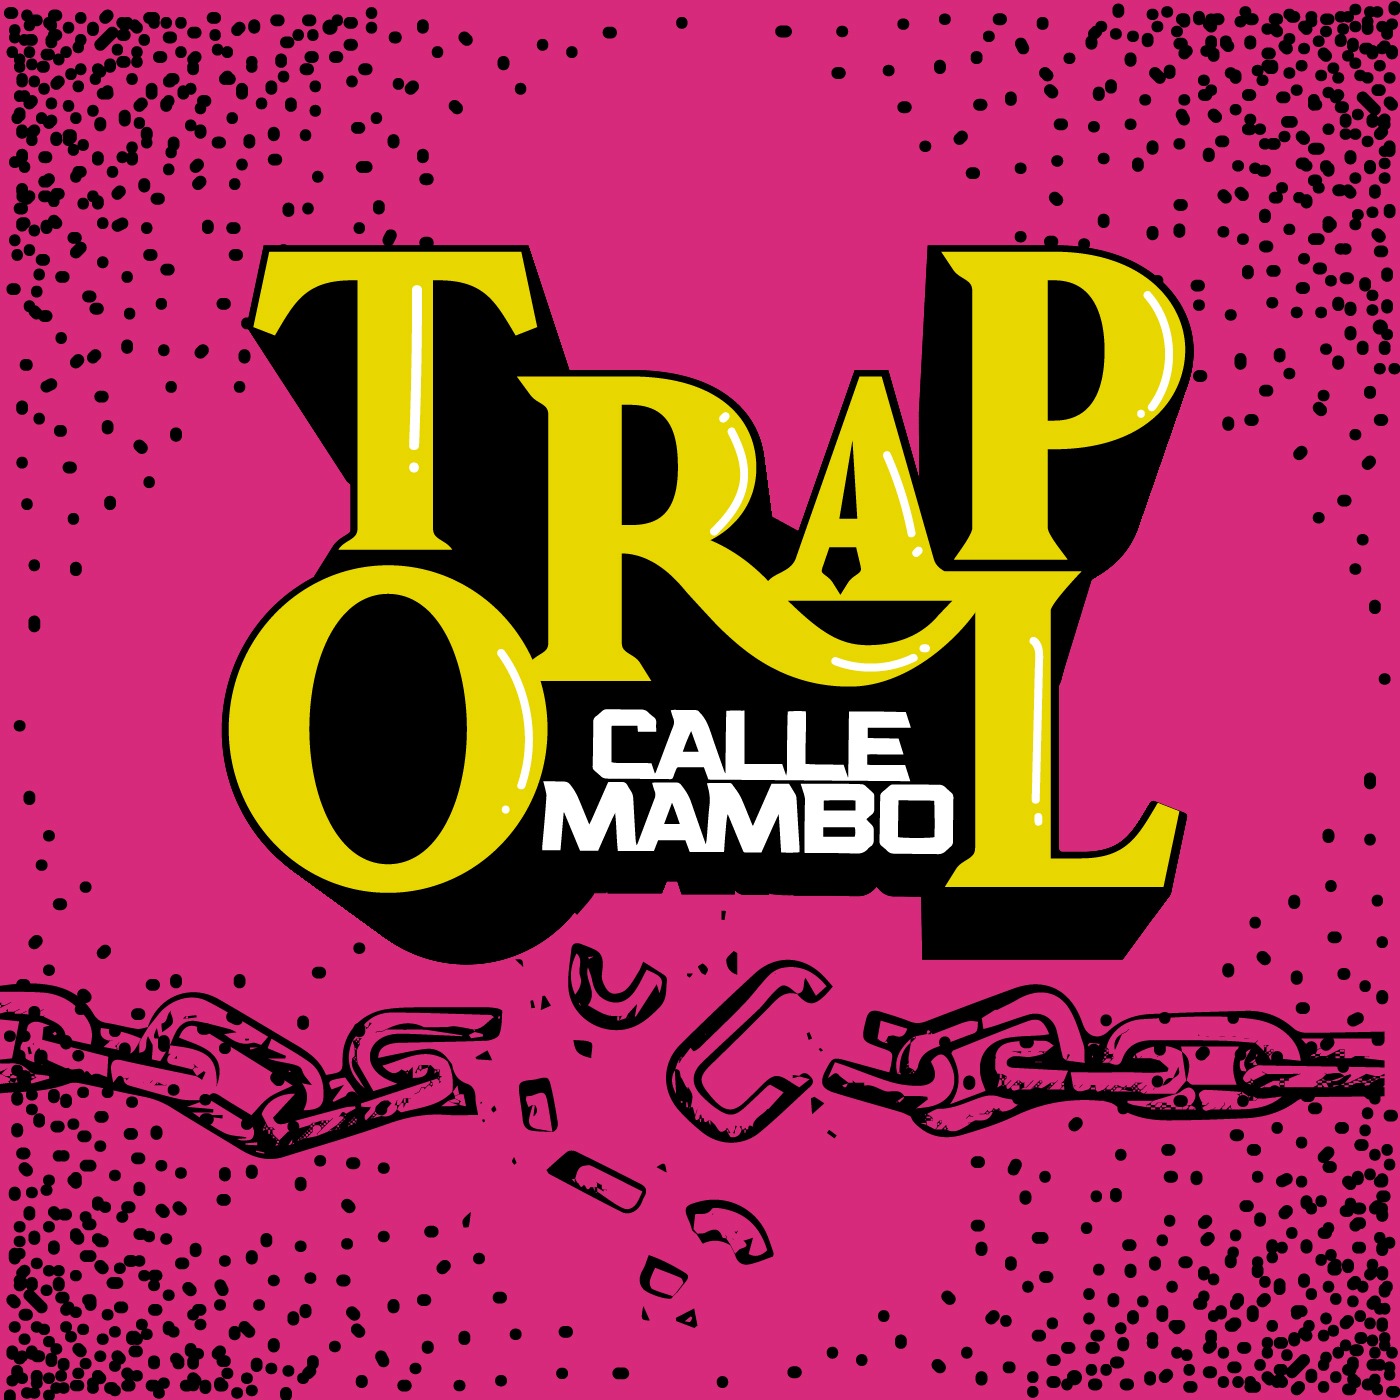 Calle Mambo - Traporal 10